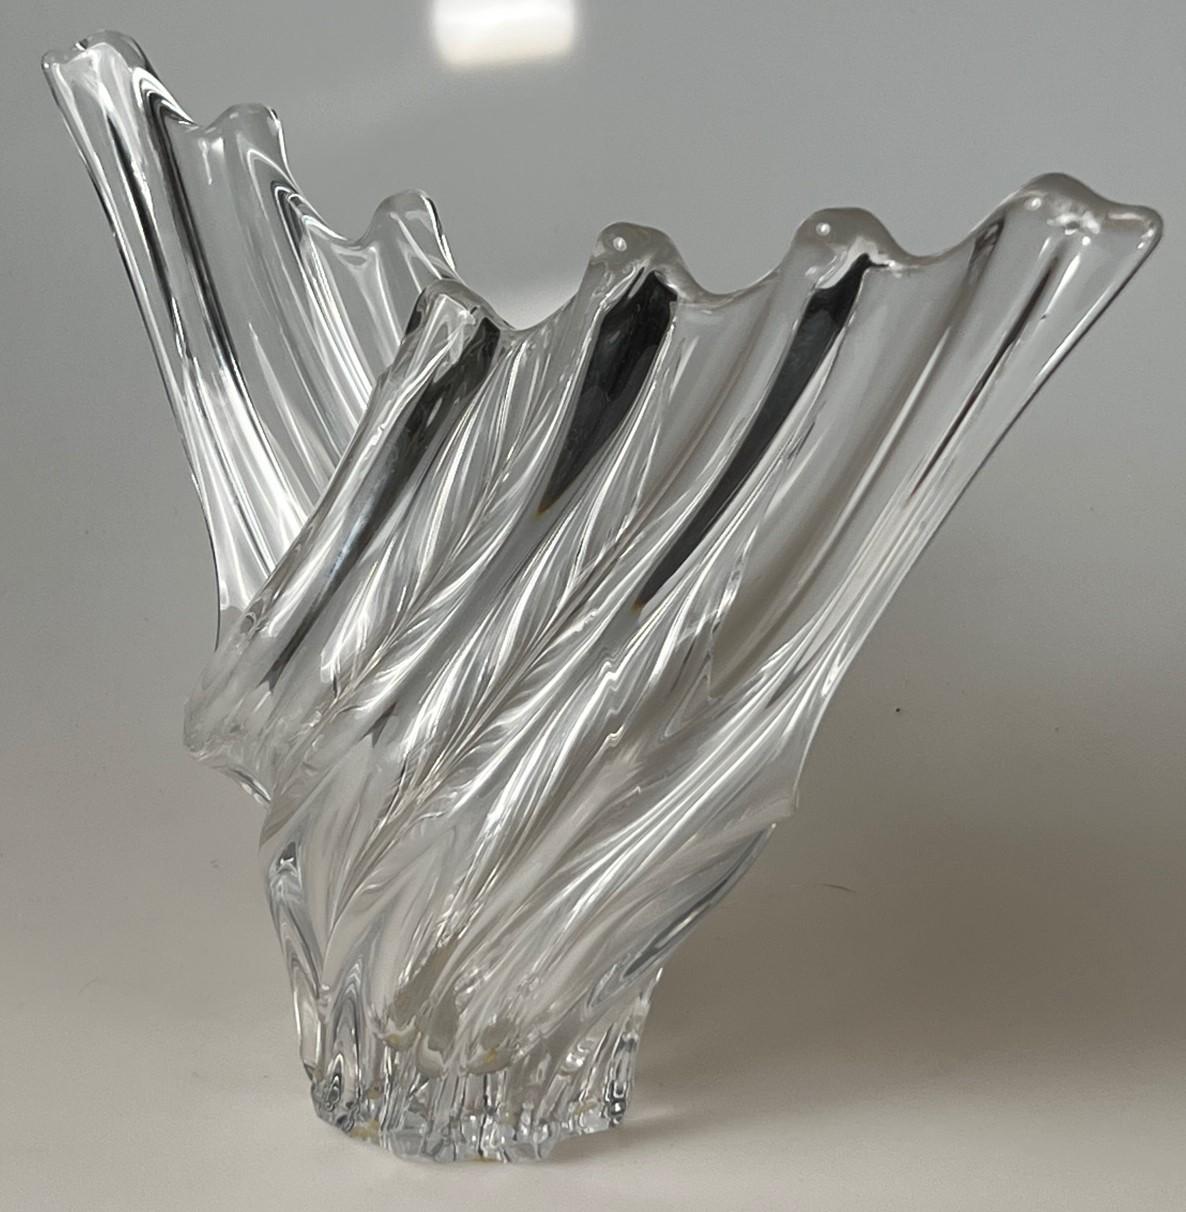 Cristalleries de Vannes-le-Châtel, Frankreich Abstrakte skulpturale Vase mit Möwenflügeln.  Säuregeätzte Art Vannes Frankreich Marke.  Dieses elegante Design aus den 1970er Jahren ist der Inbegriff für Ihr Zuhause, Ihr Büro oder Ihre Geschäftsräume.